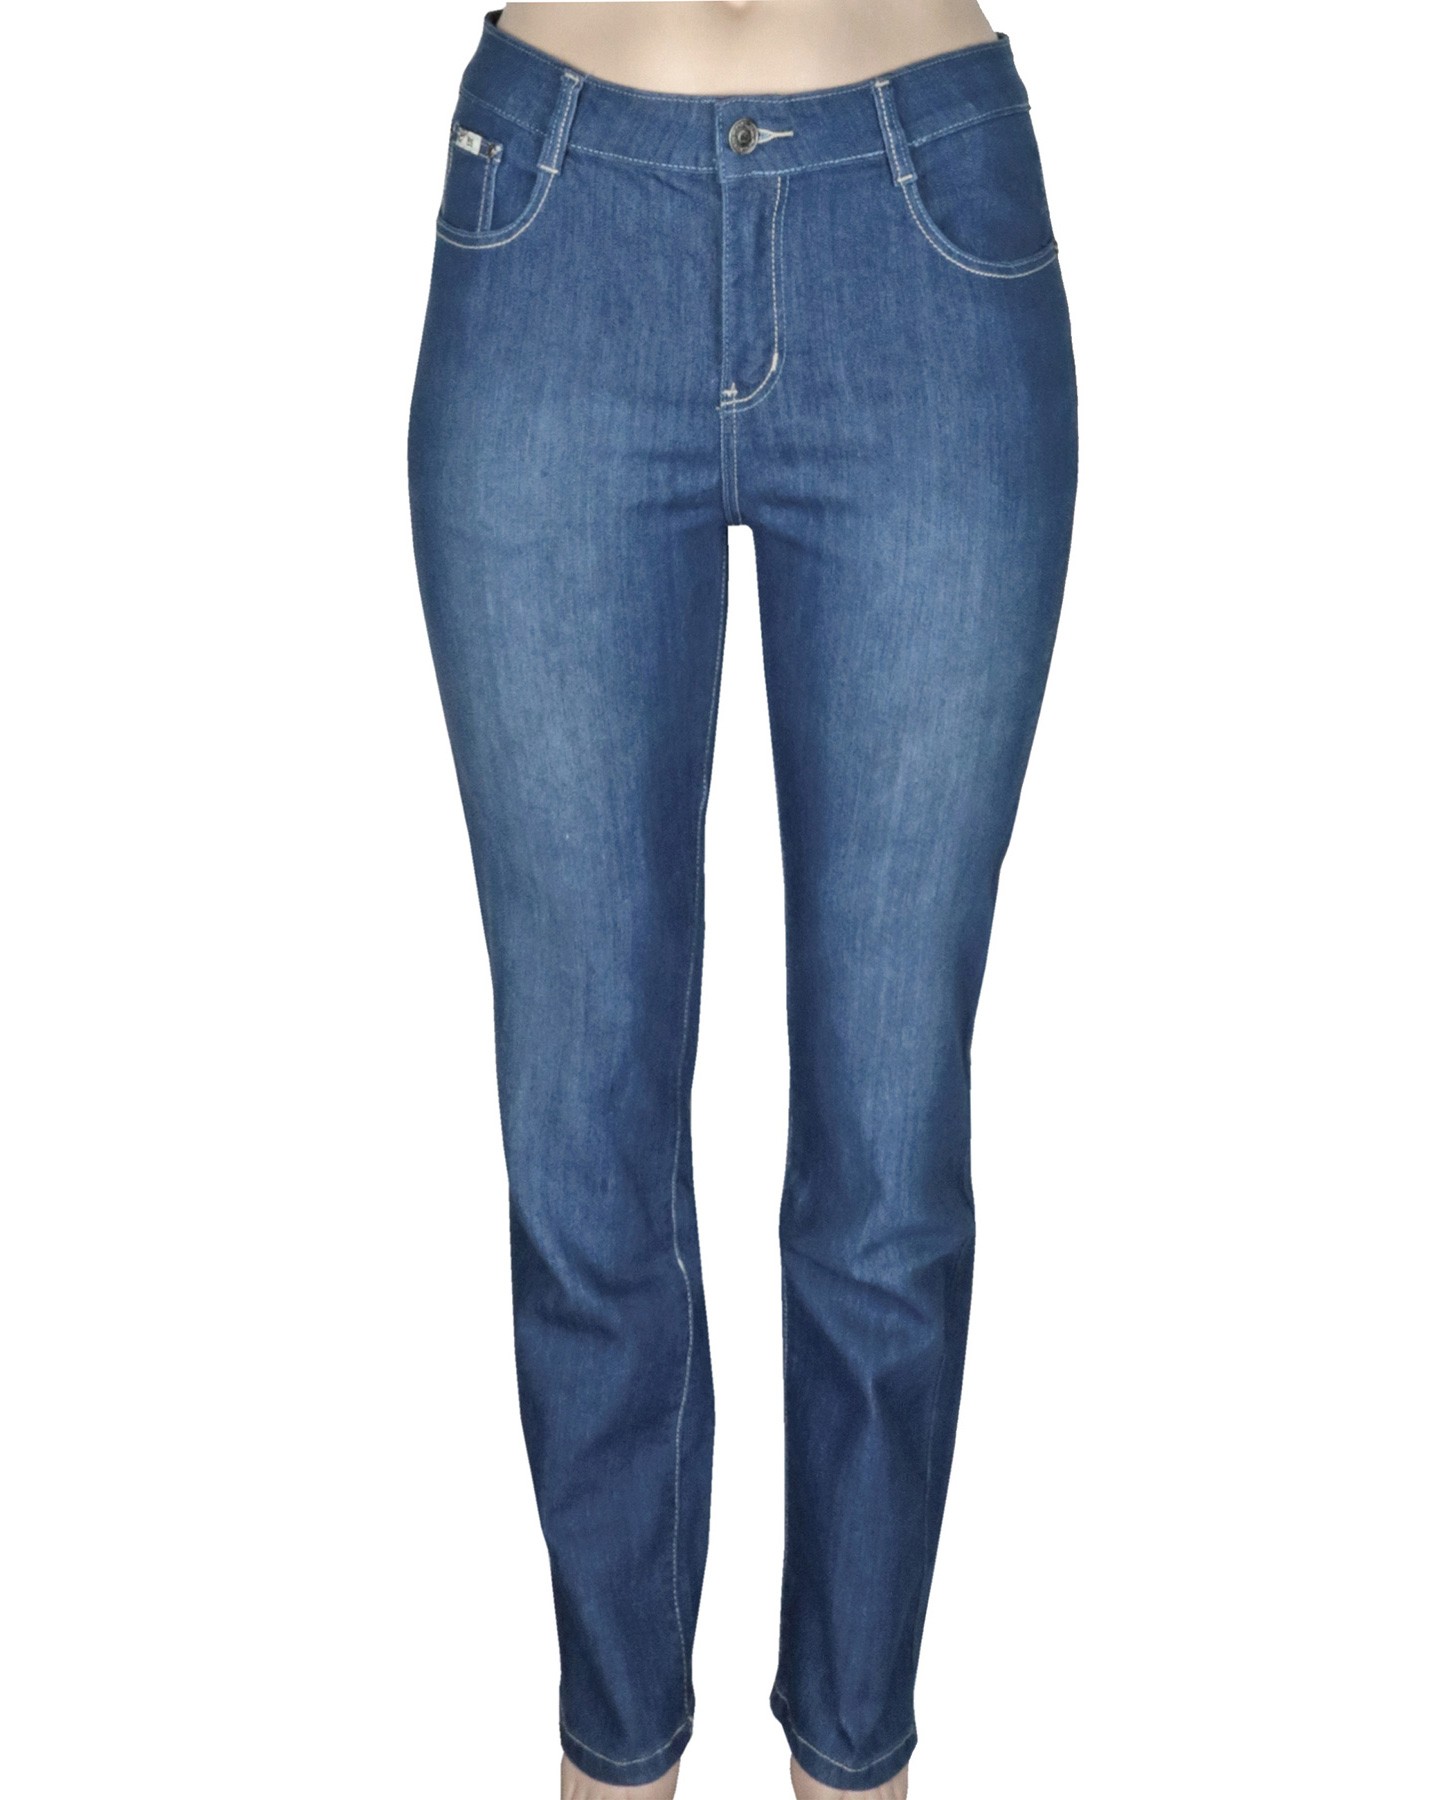 B.S Stretch Jeans Damen 5-Pocket Denim Hose mit geradem Bein Gr. 46